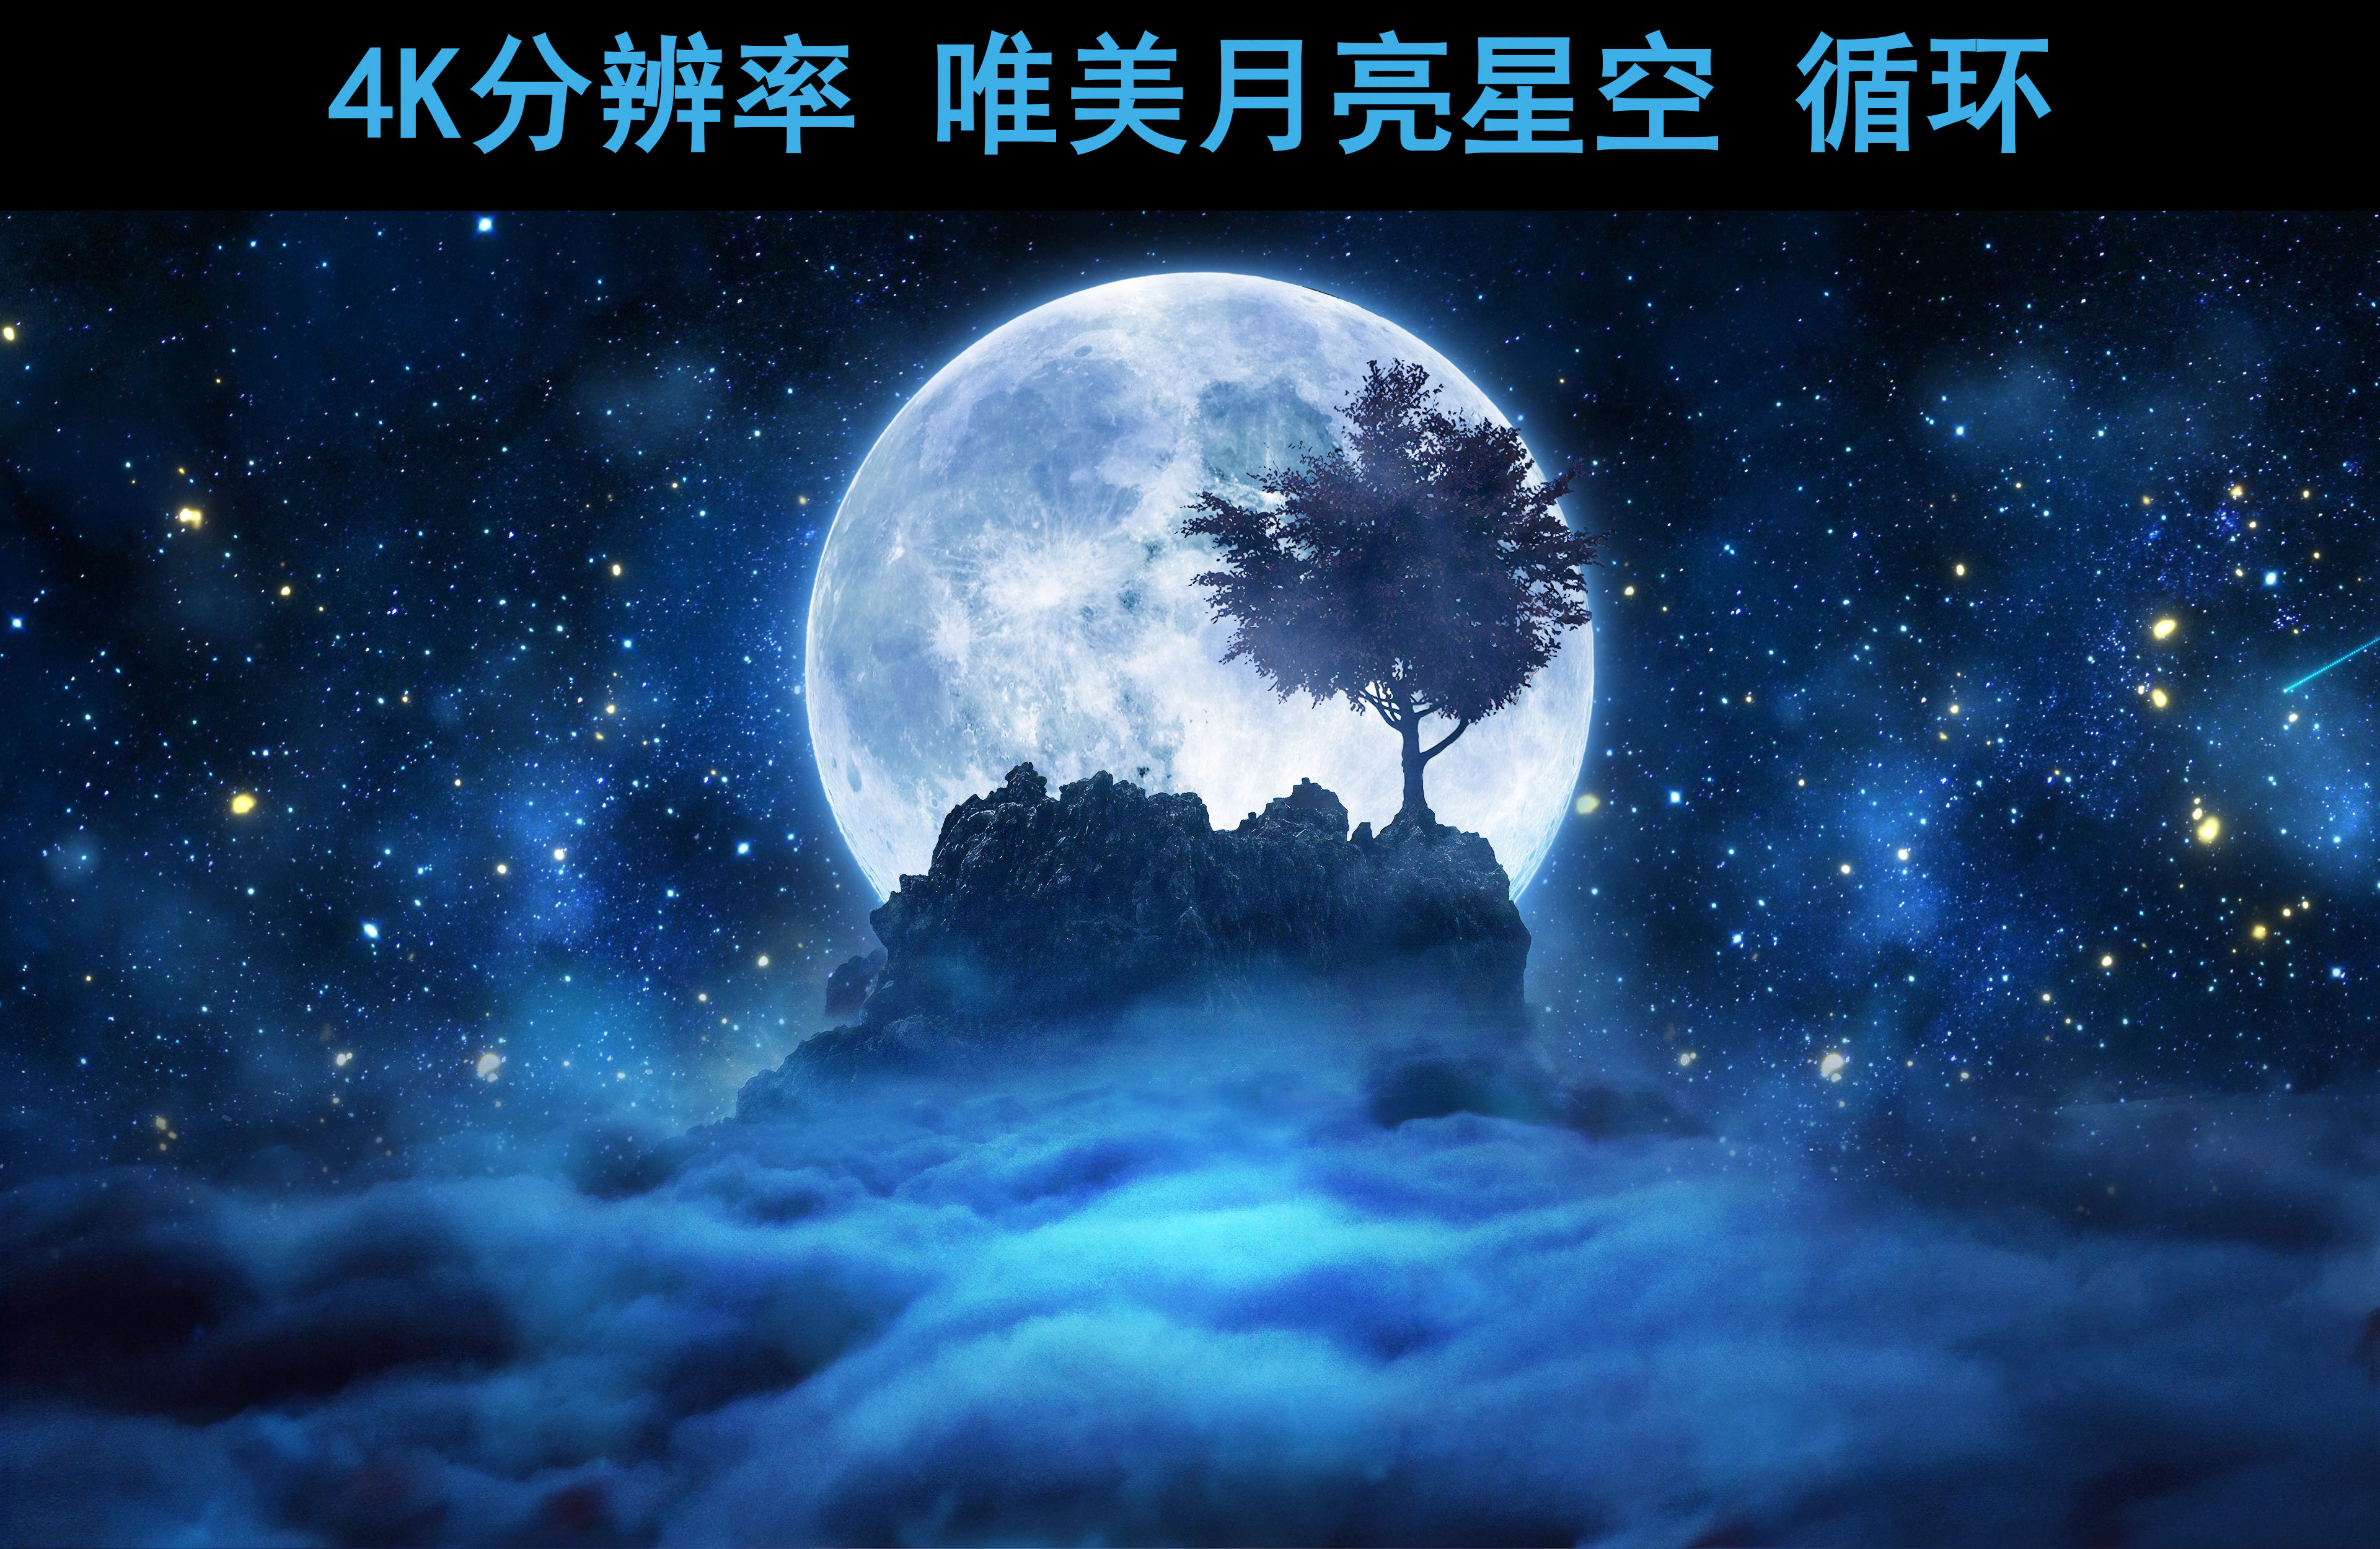 视频素材 舞台背景 抒情唯美 星空月夜树下【4k分辨率循环】 声明水印